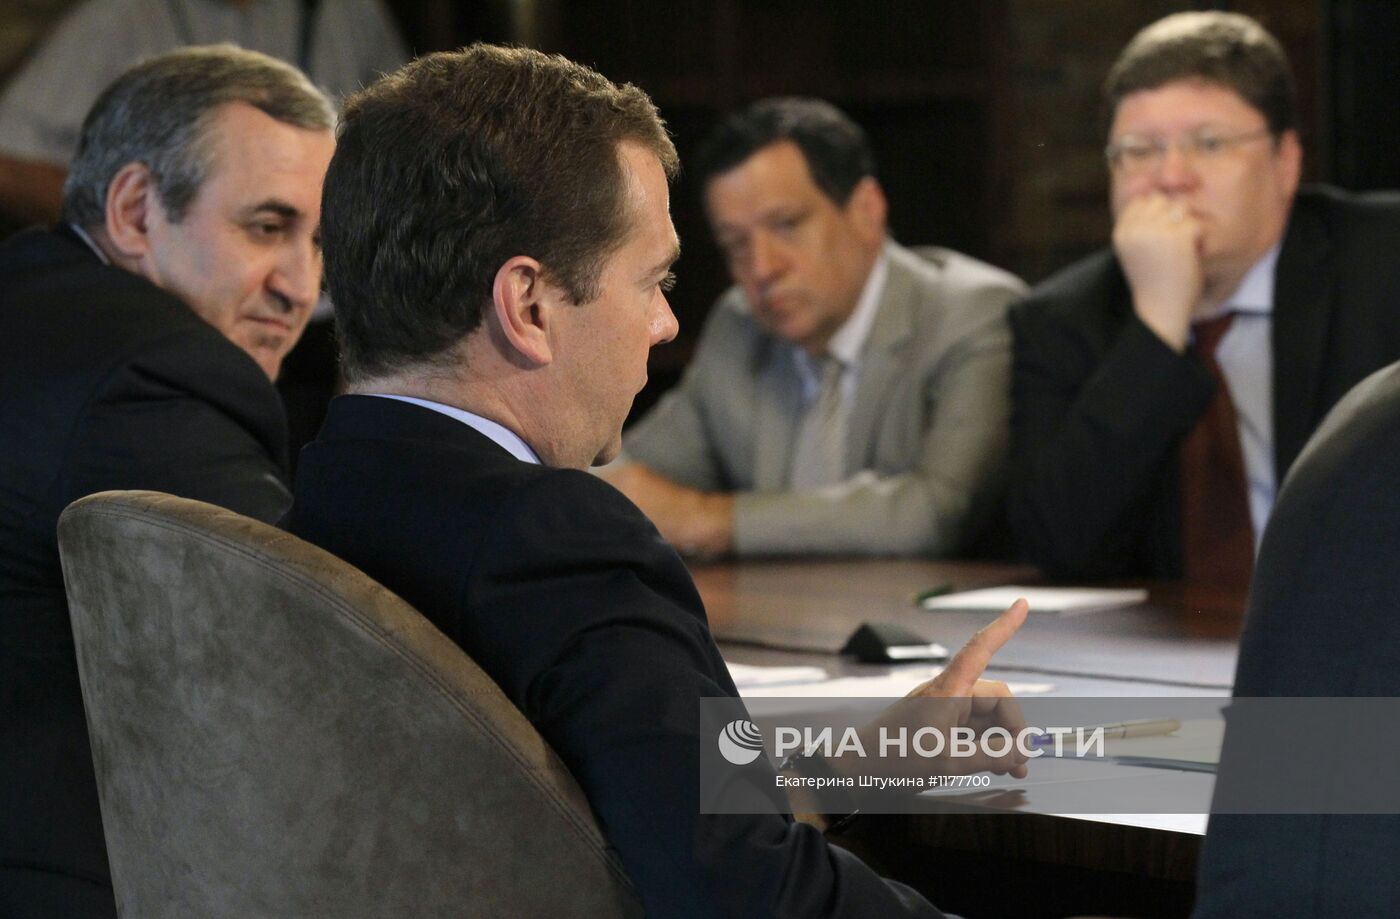 Встреча Д. Медведева с руководством партии "Единая Россия"